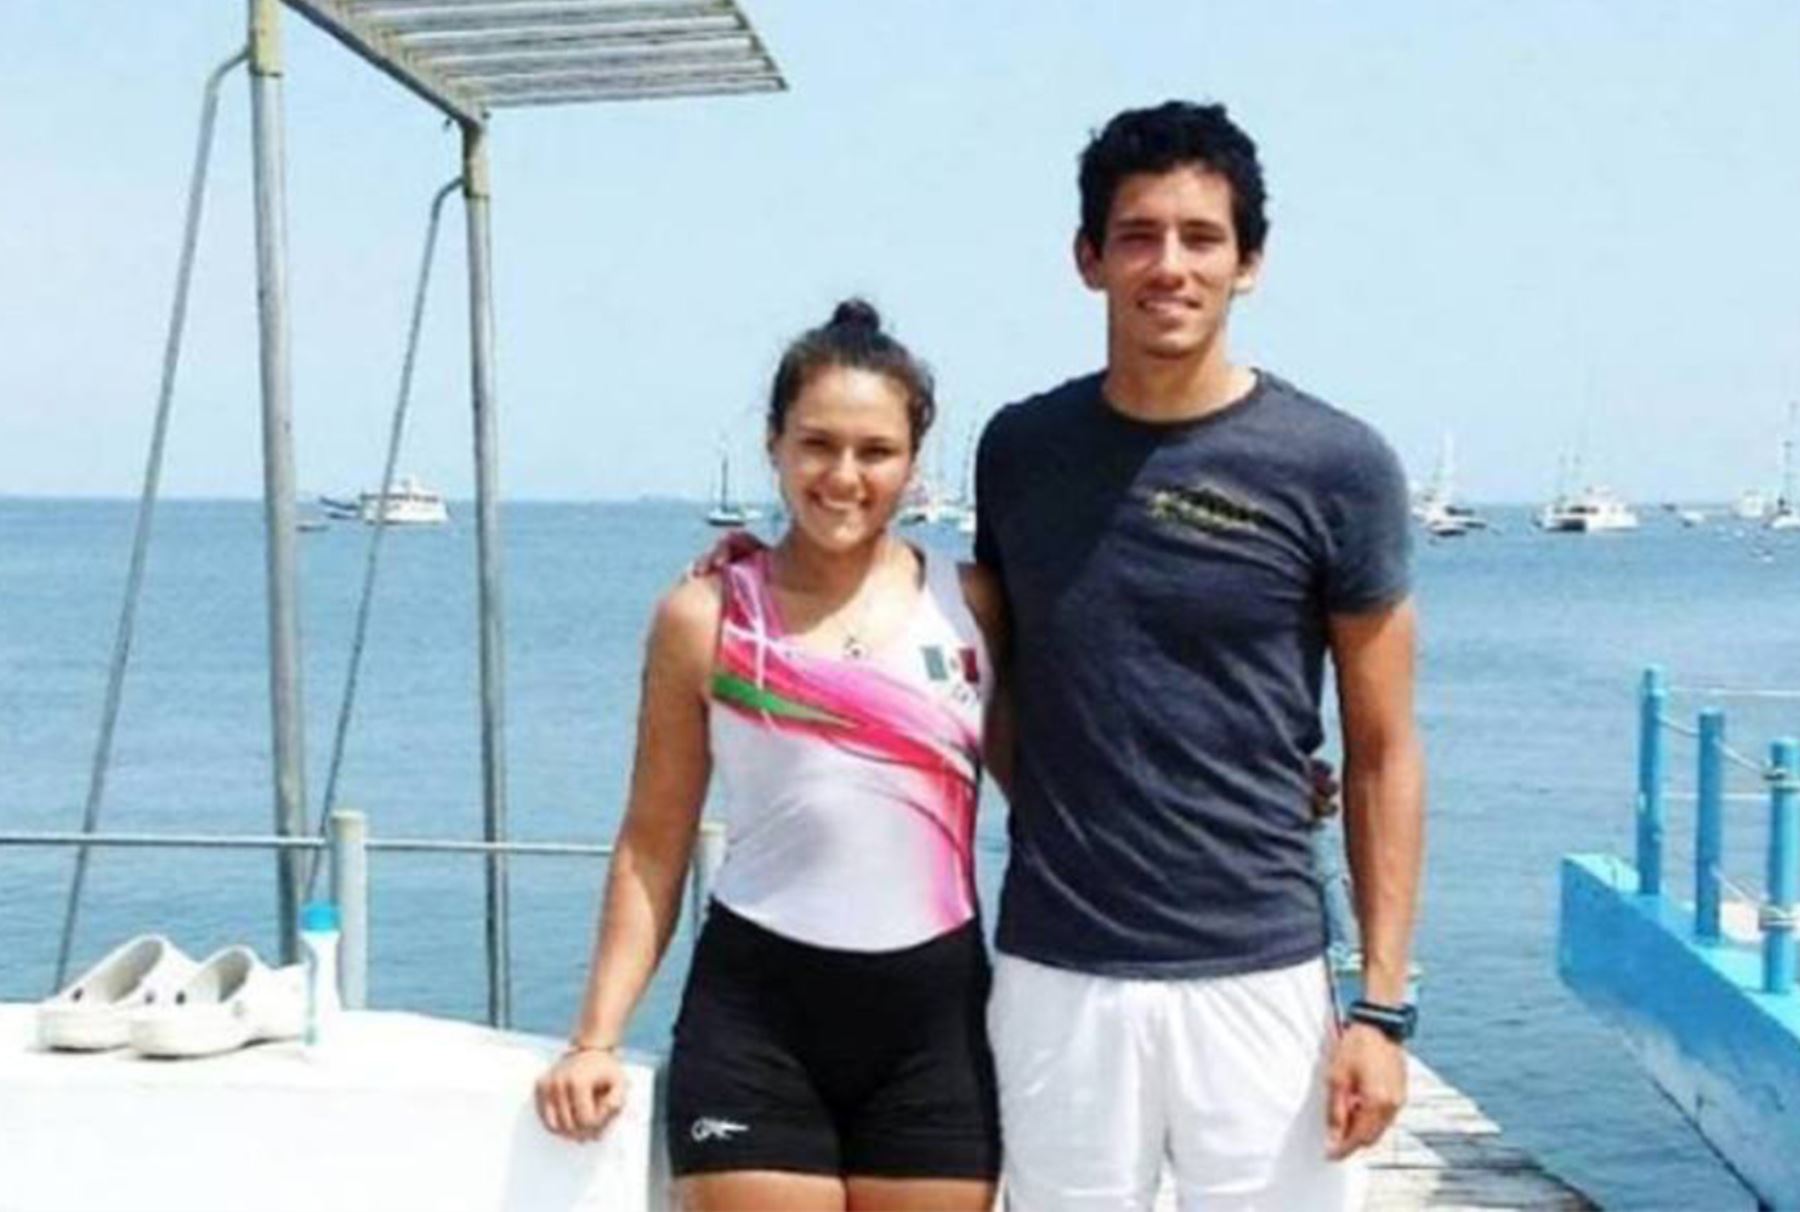 Renzo León y Camila Valle representarán al Perú en los Juegos Olímpicos de Río 2016. Foto: Facebook.